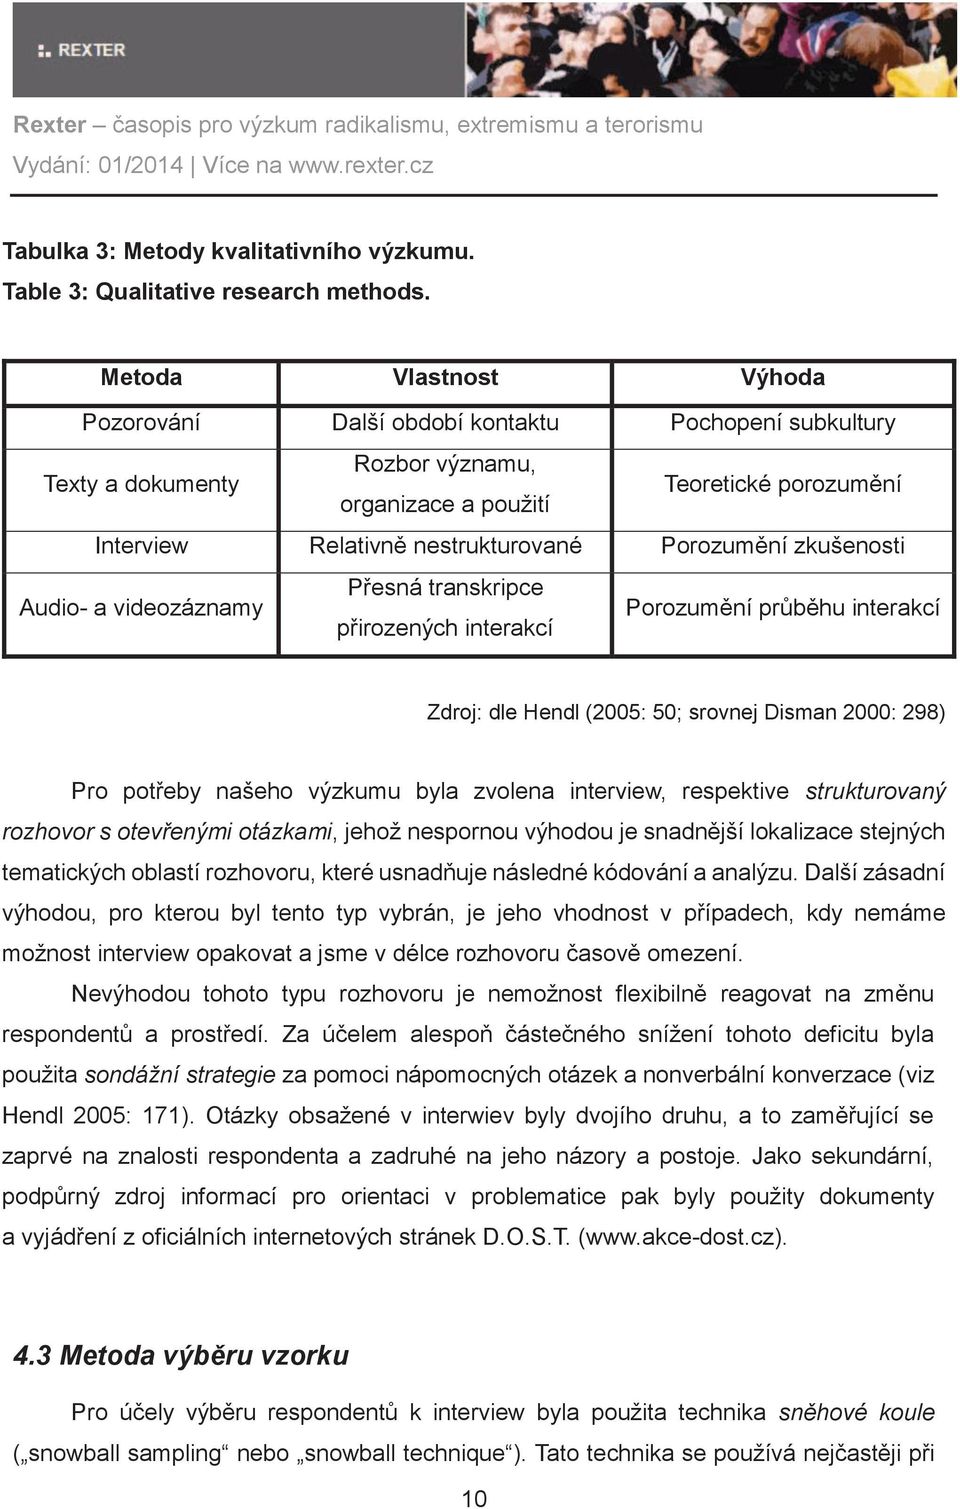 Porozumění zkušenosti Audio- a videozáznamy Přesná transkripce přirozených interakcí Porozumění průběhu interakcí Zdroj: dle Hendl (2005: 50; srovnej Disman 2000: 298) Pro potřeby našeho výzkumu byla